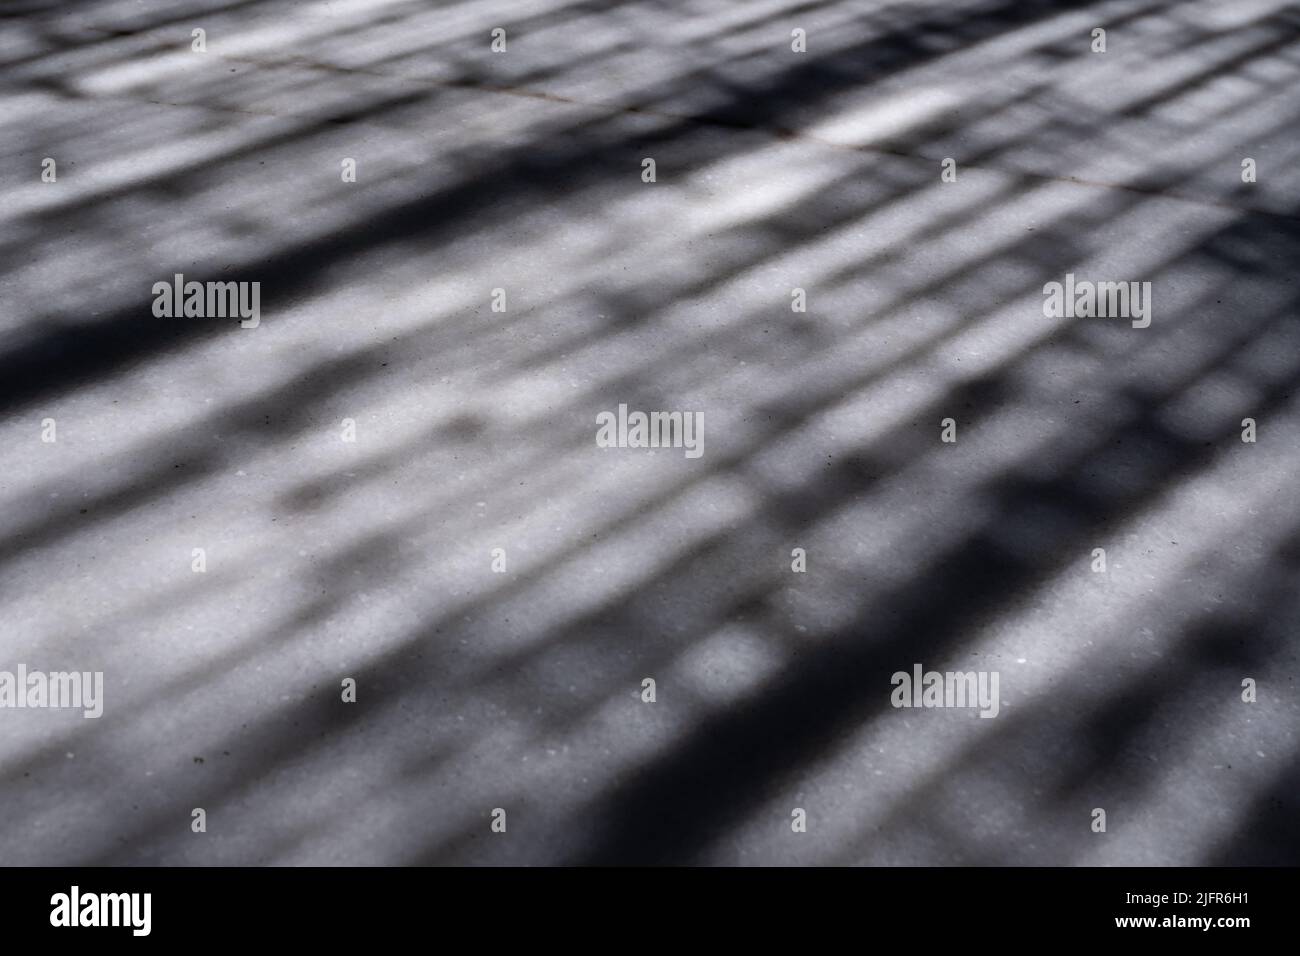 Nahaufnahme der Schatten, die auf der weißen Marmoroberfläche eines Tisches reflektiert werden. Diagonale Schattenstreifen. Abstraktes Bild einer strukturierten Oberfläche. Stockfoto